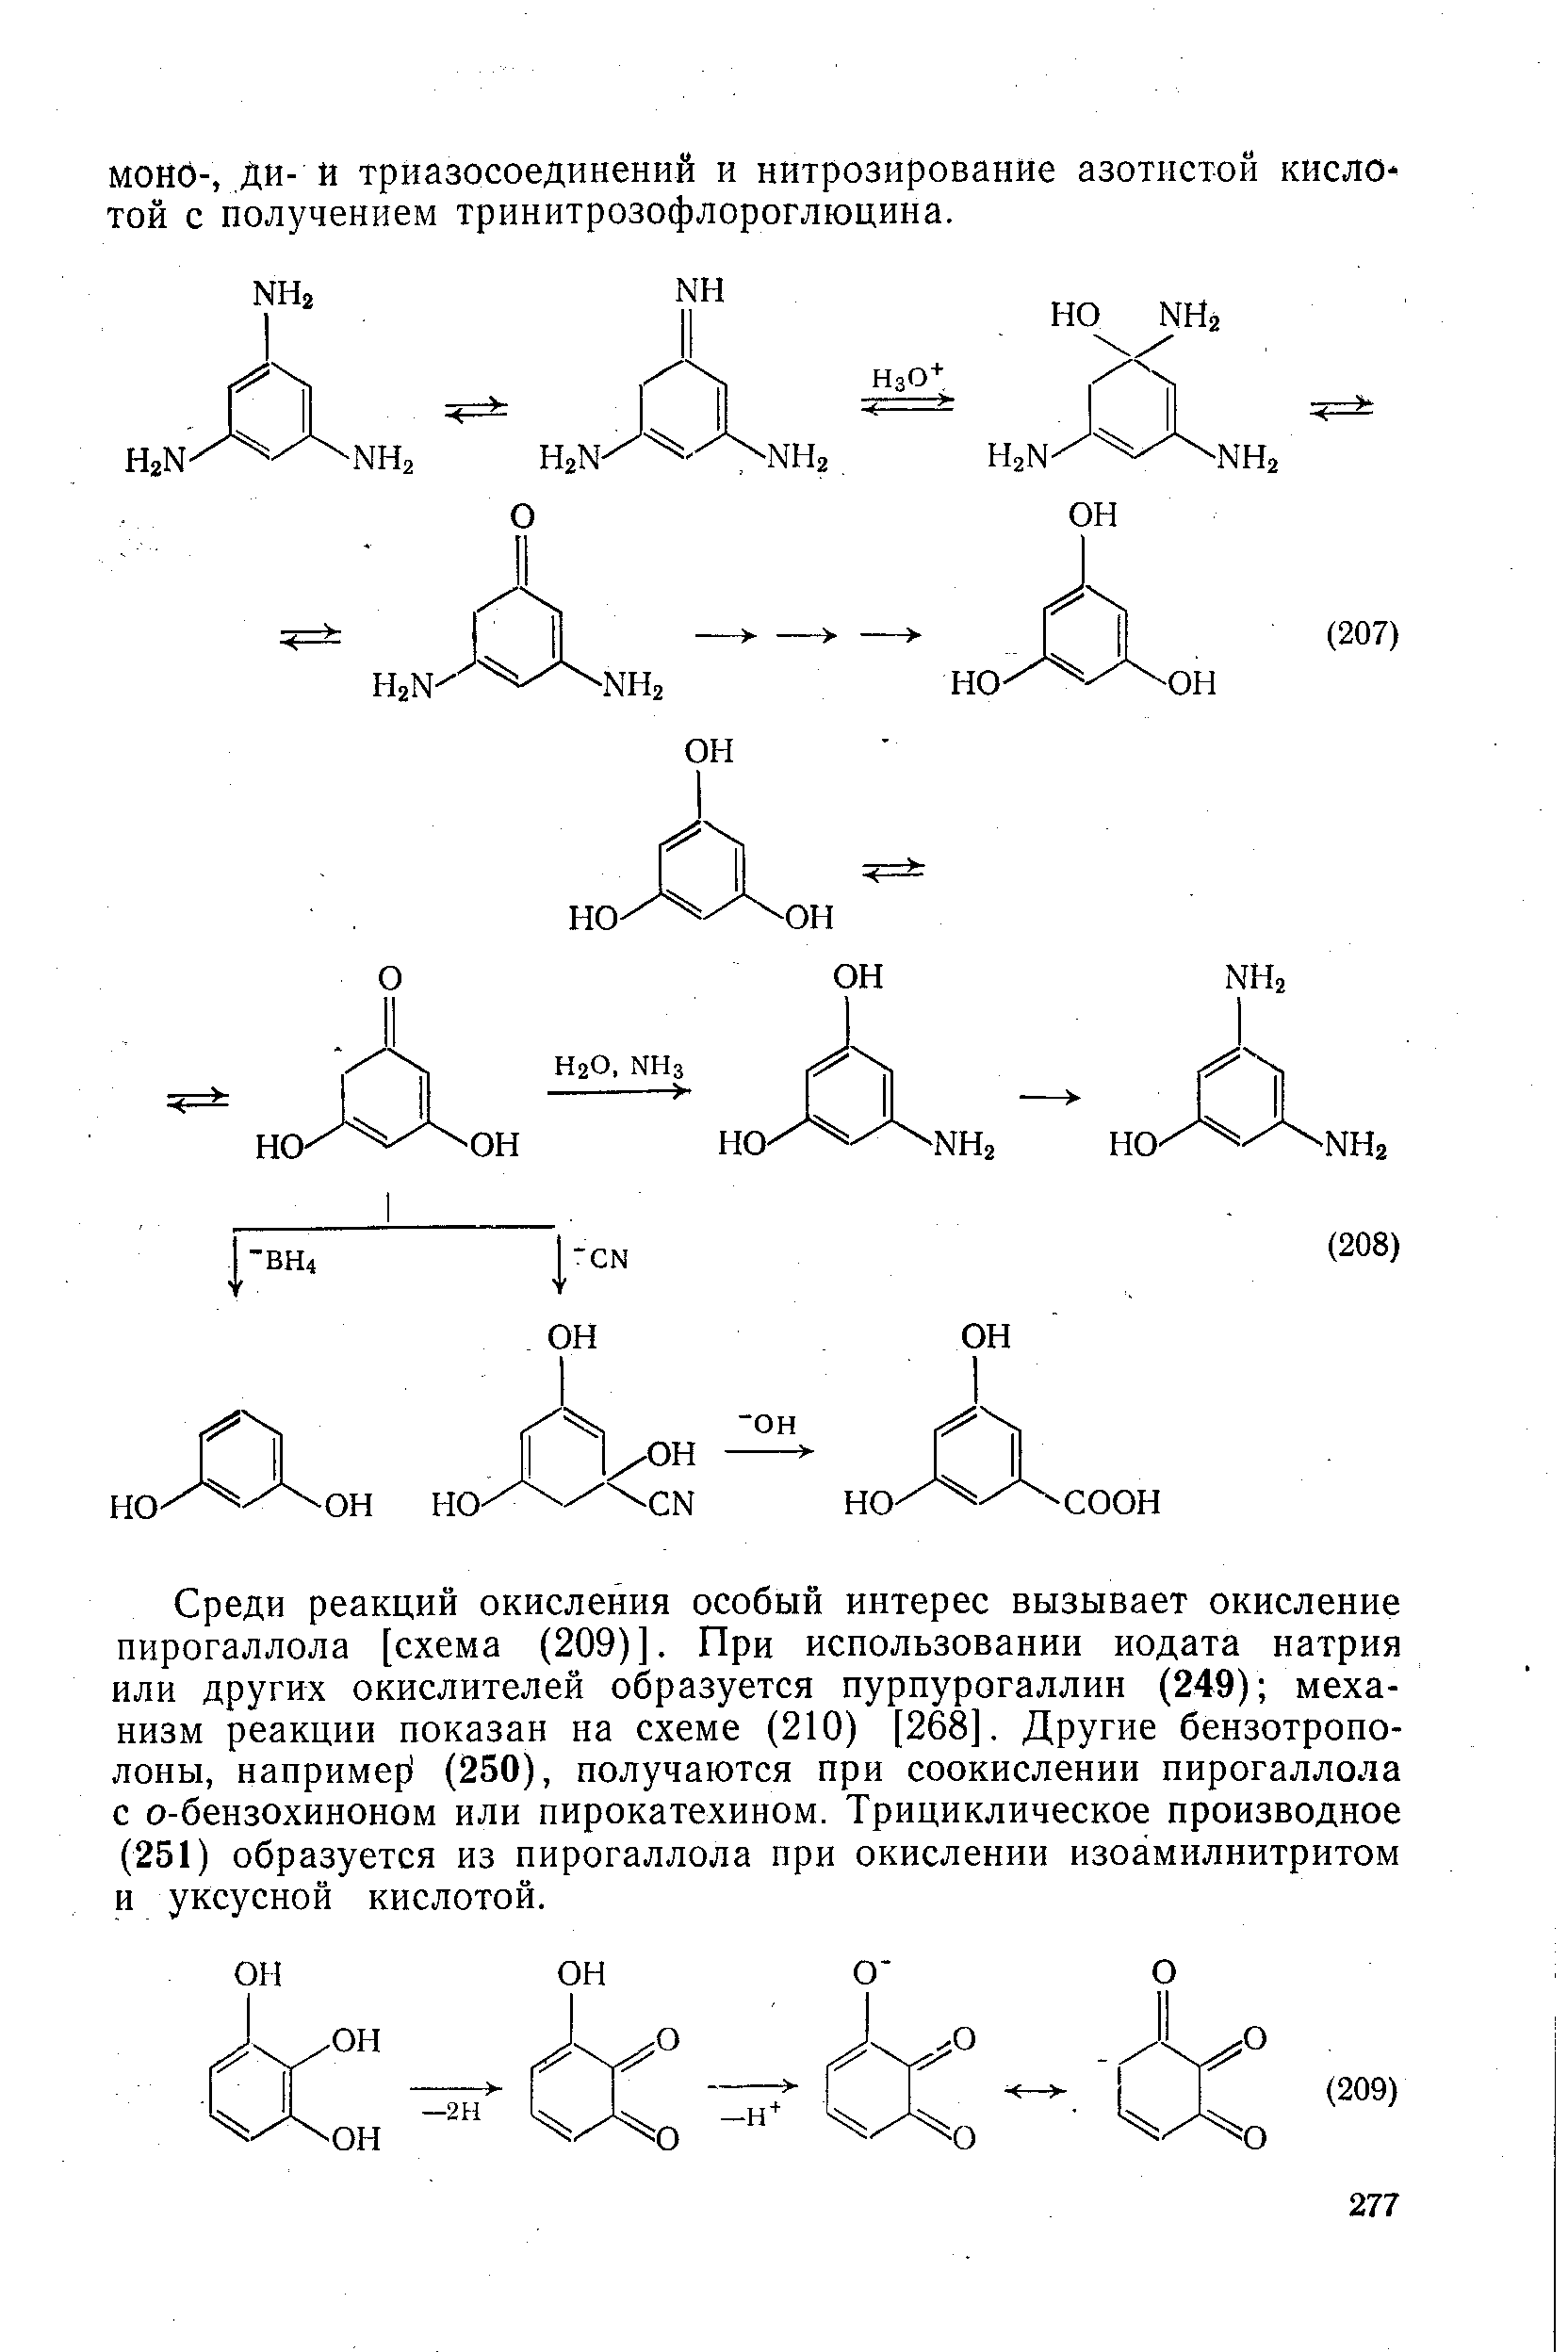 Среди реакций окисления особый интерес вызывает окисление пирогаллола [схема (209)]. При использовании иодата натрия или других окислителей образуется пурпурогаллин (249) механизм реакции показан на схеме (210) [268]. Другие бензотропо-лоны, например (250), получаются при соокислении пирогаллола с о-бензохиноном или пирокатехином. Трициклическое производное (251) образуется из пирогаллола при окислении изоамилнитритом и уксусной кислотой.